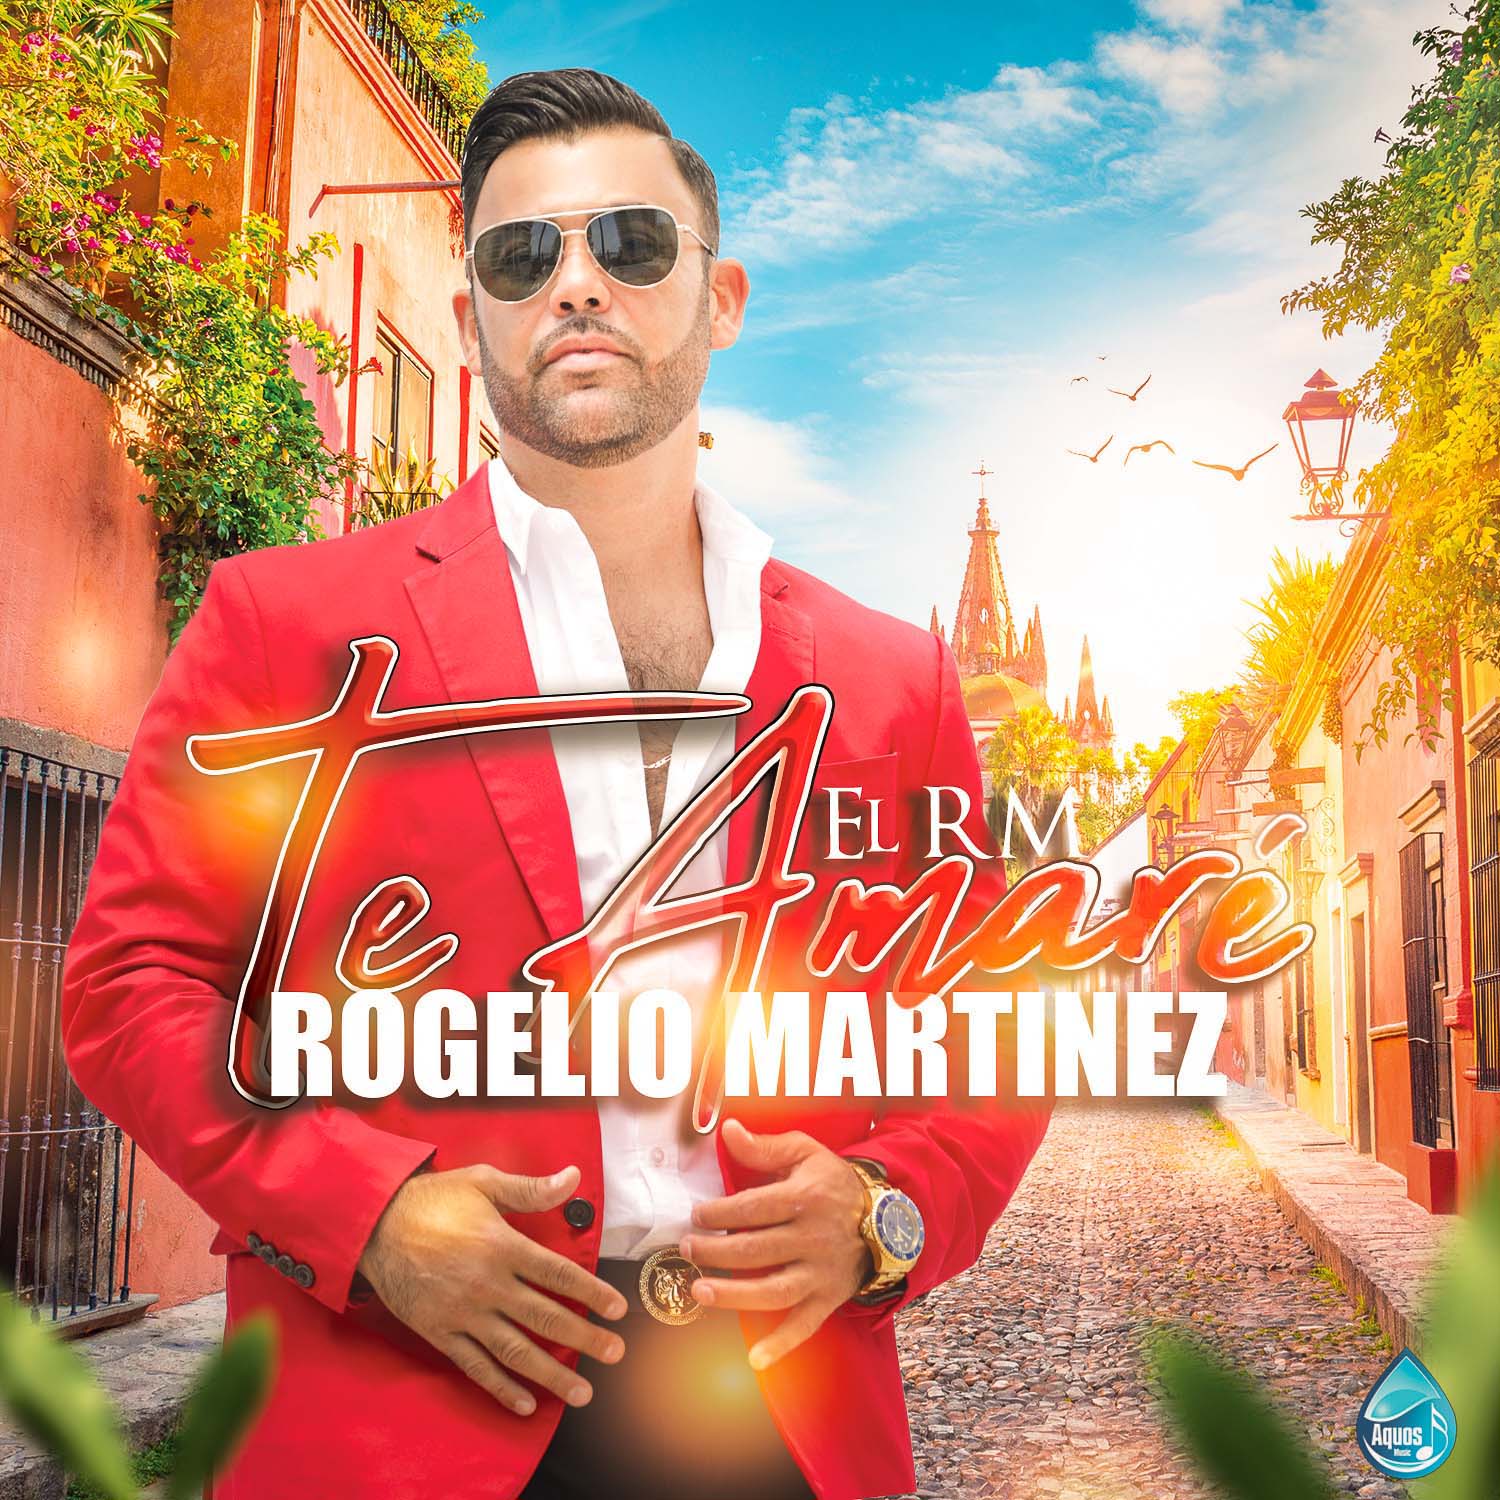 “Te amaré” es el nuevo sencillo de Rogelio Martínez “El RM”